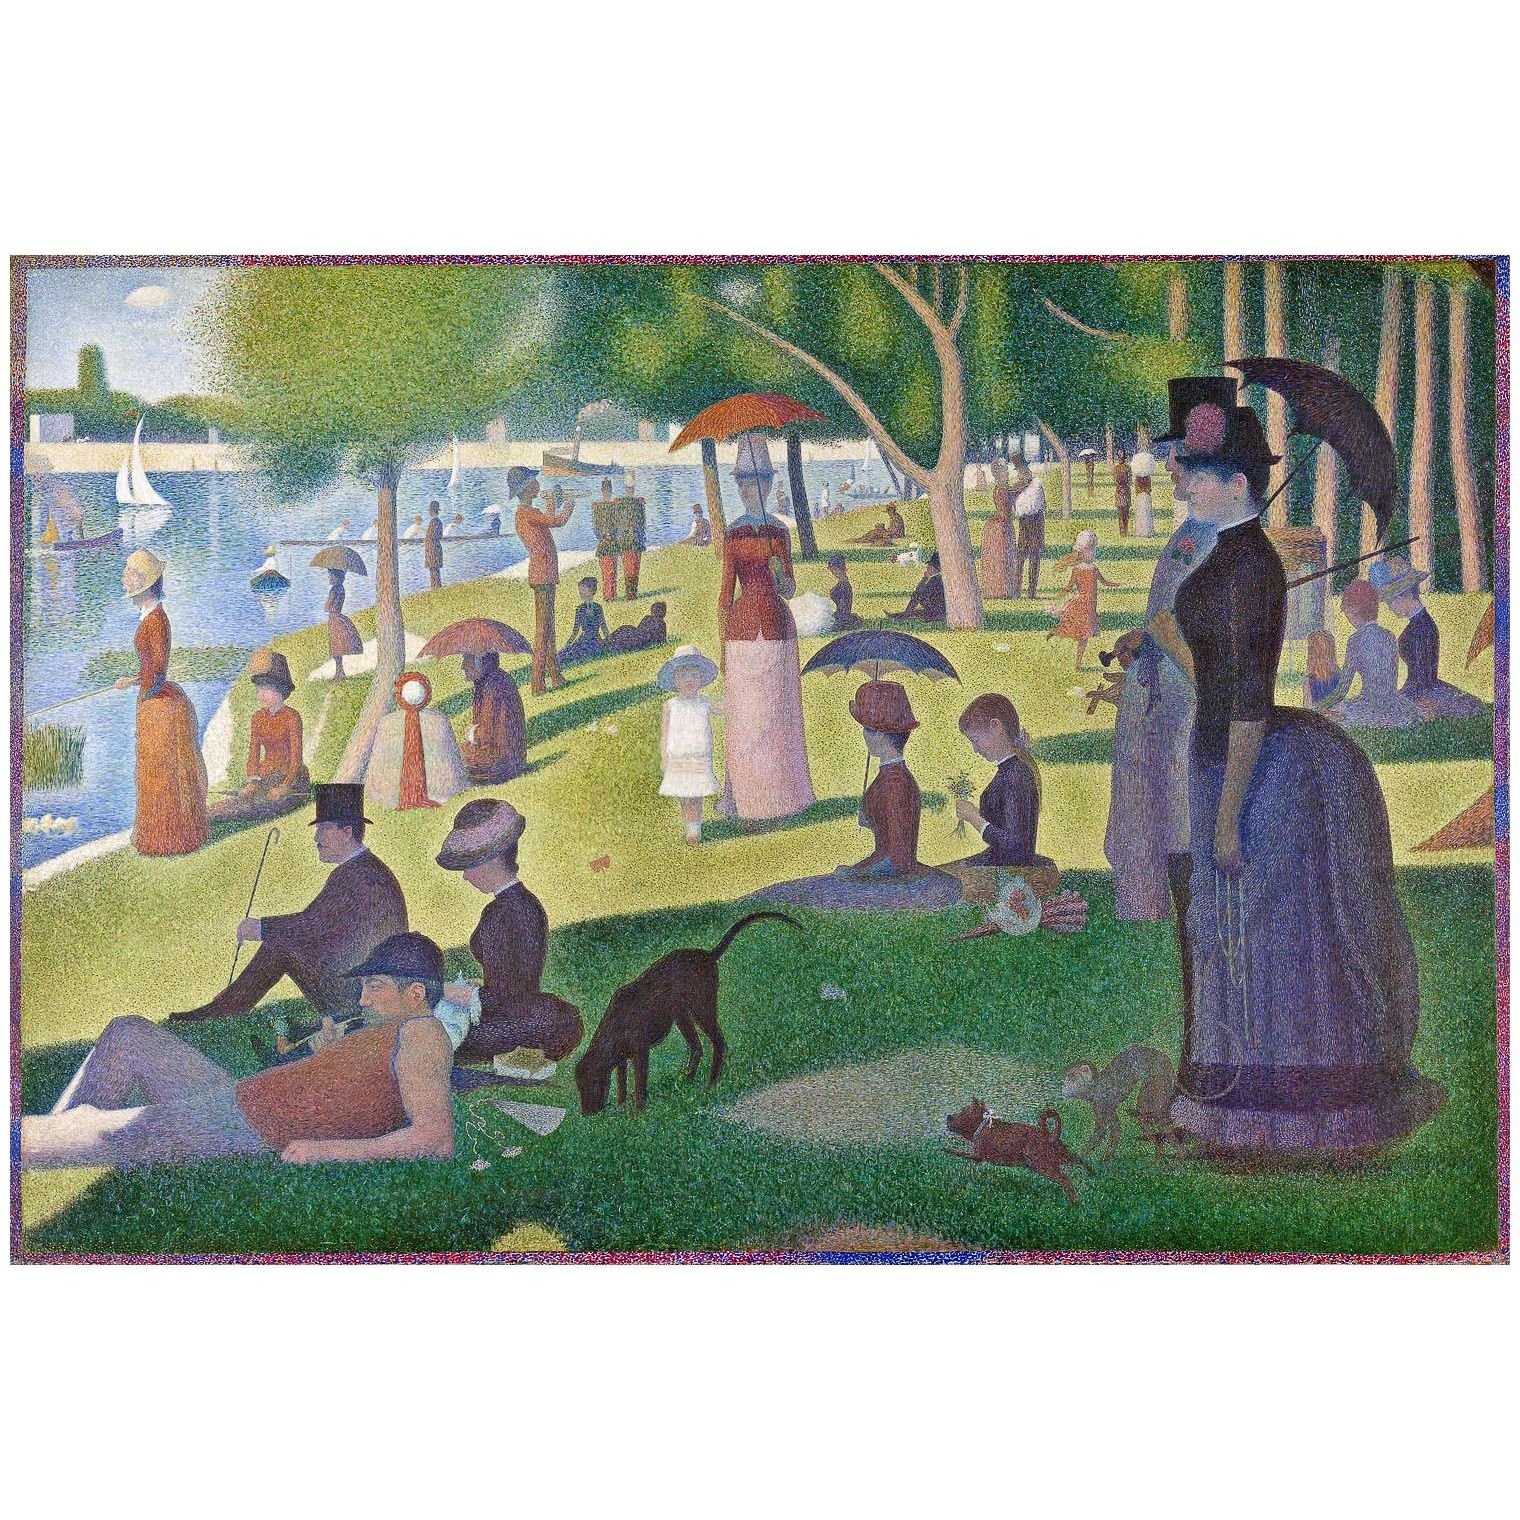 Georges Seurat. Un dimanche à l'Île de la Grande Jatte. 1884-1886. Art Institute Chicago